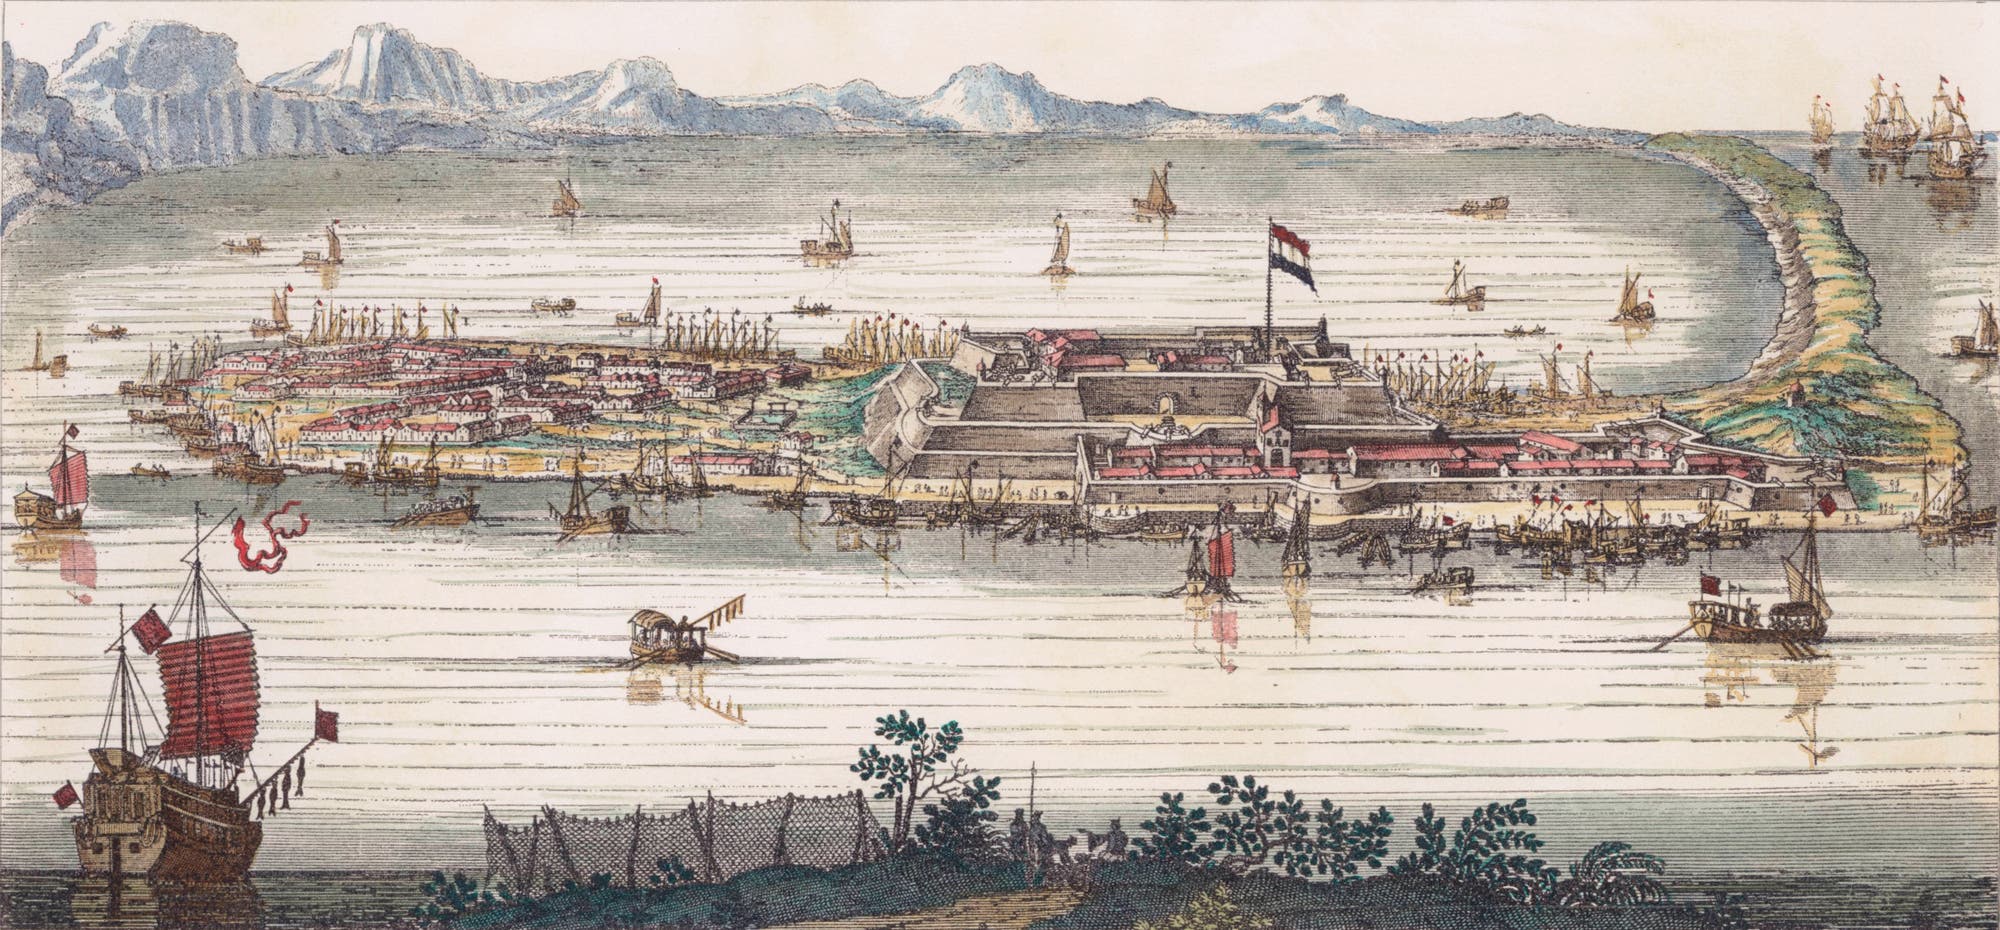 Kuperstich des Fort Zeelandia auf Taiwan.